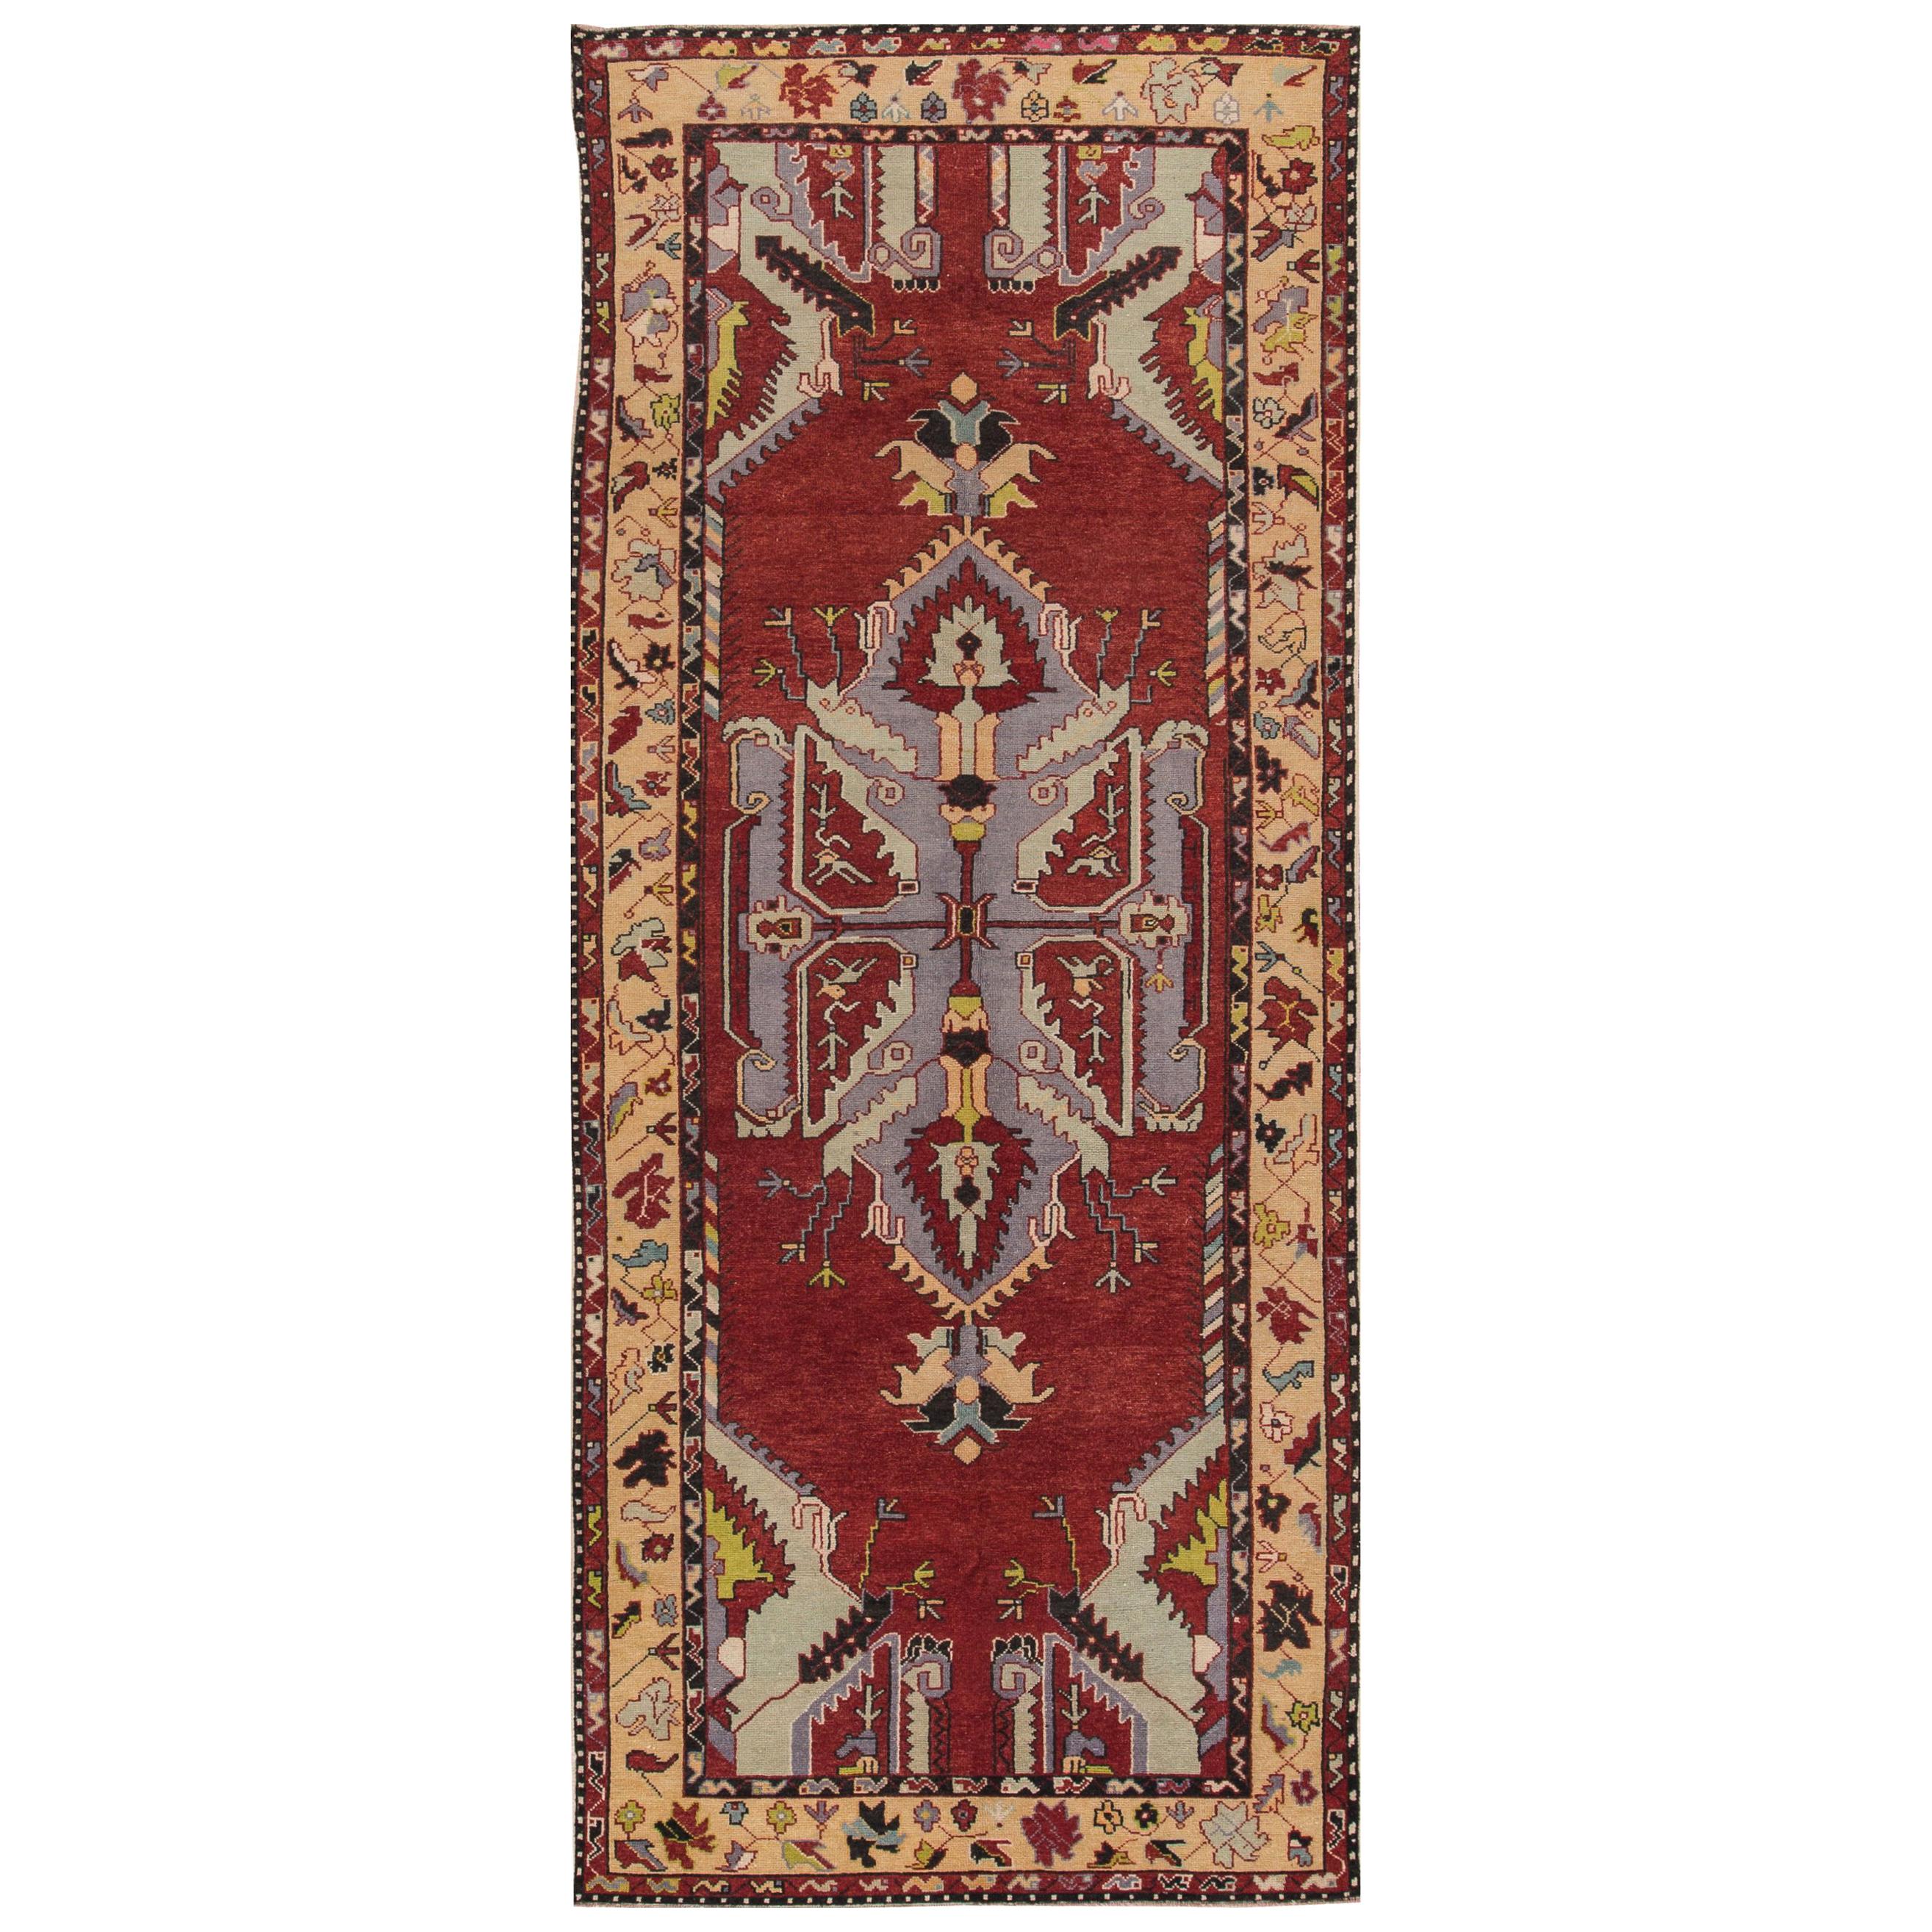 Türkischer anatolischer Teppich